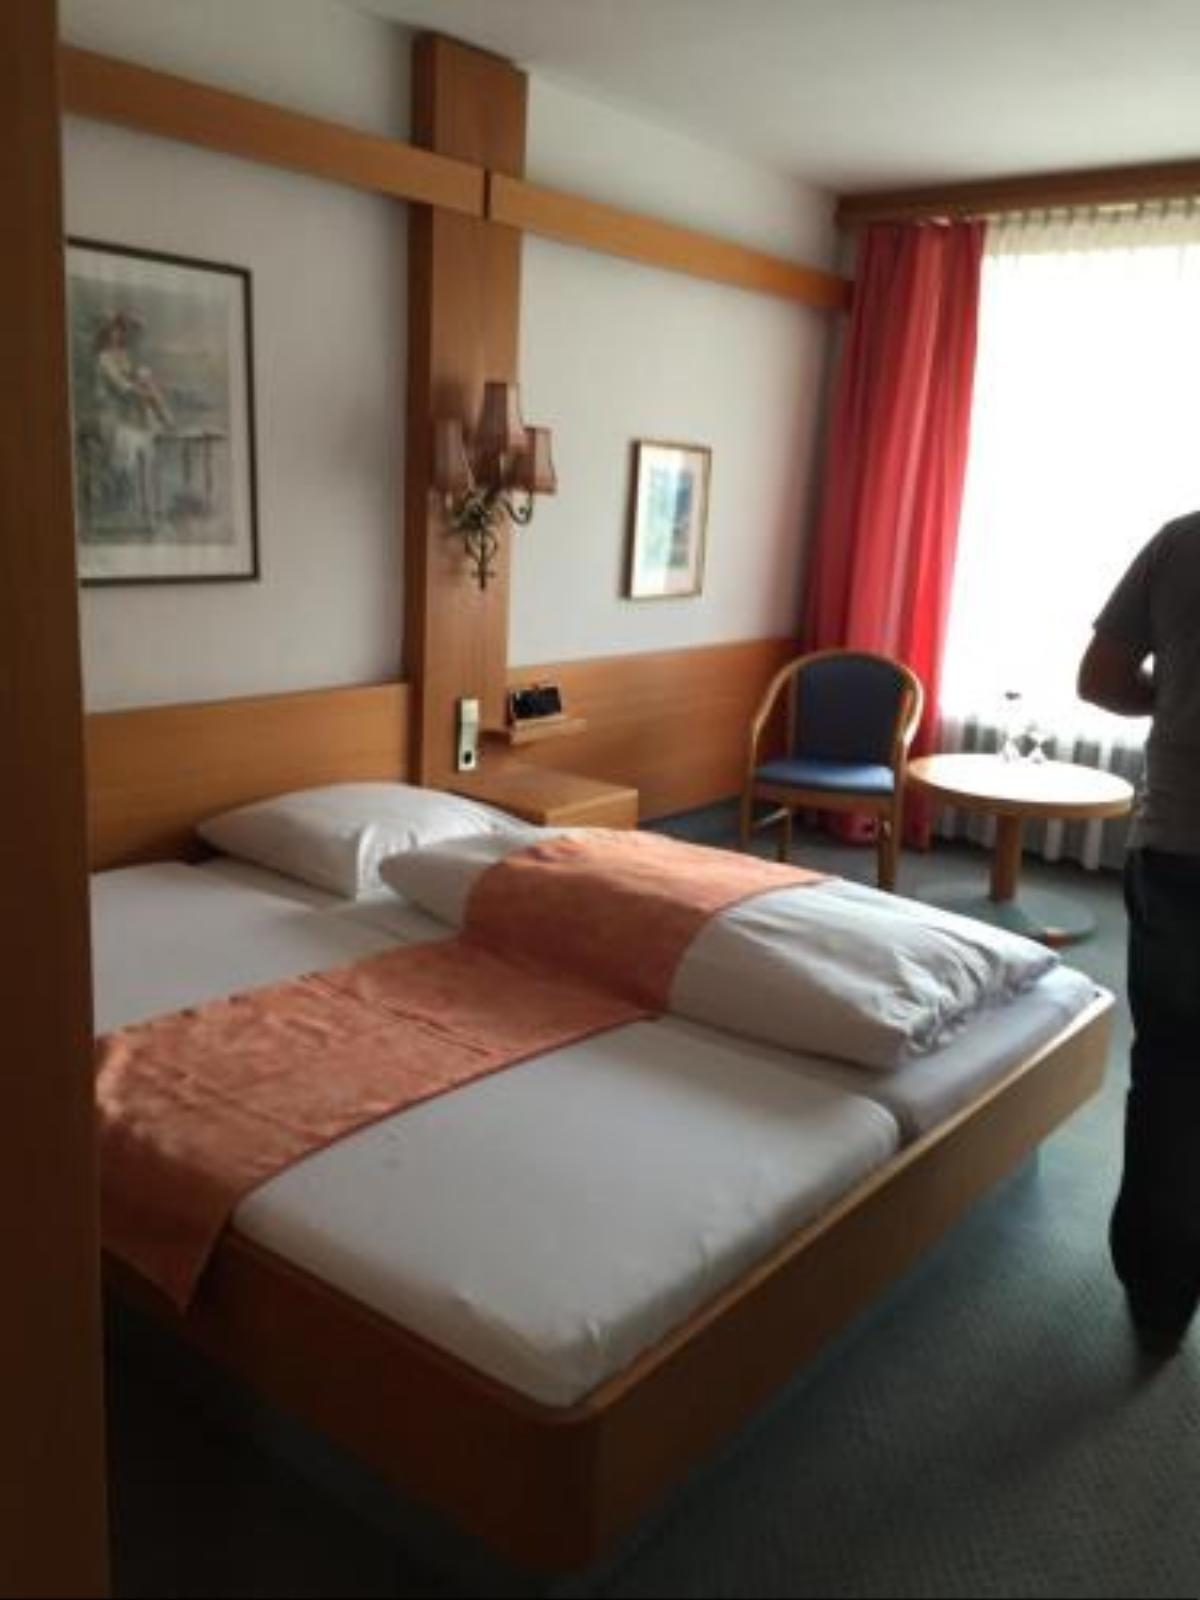 Kronen Hotel Hotel Bad Liebenzell Germany